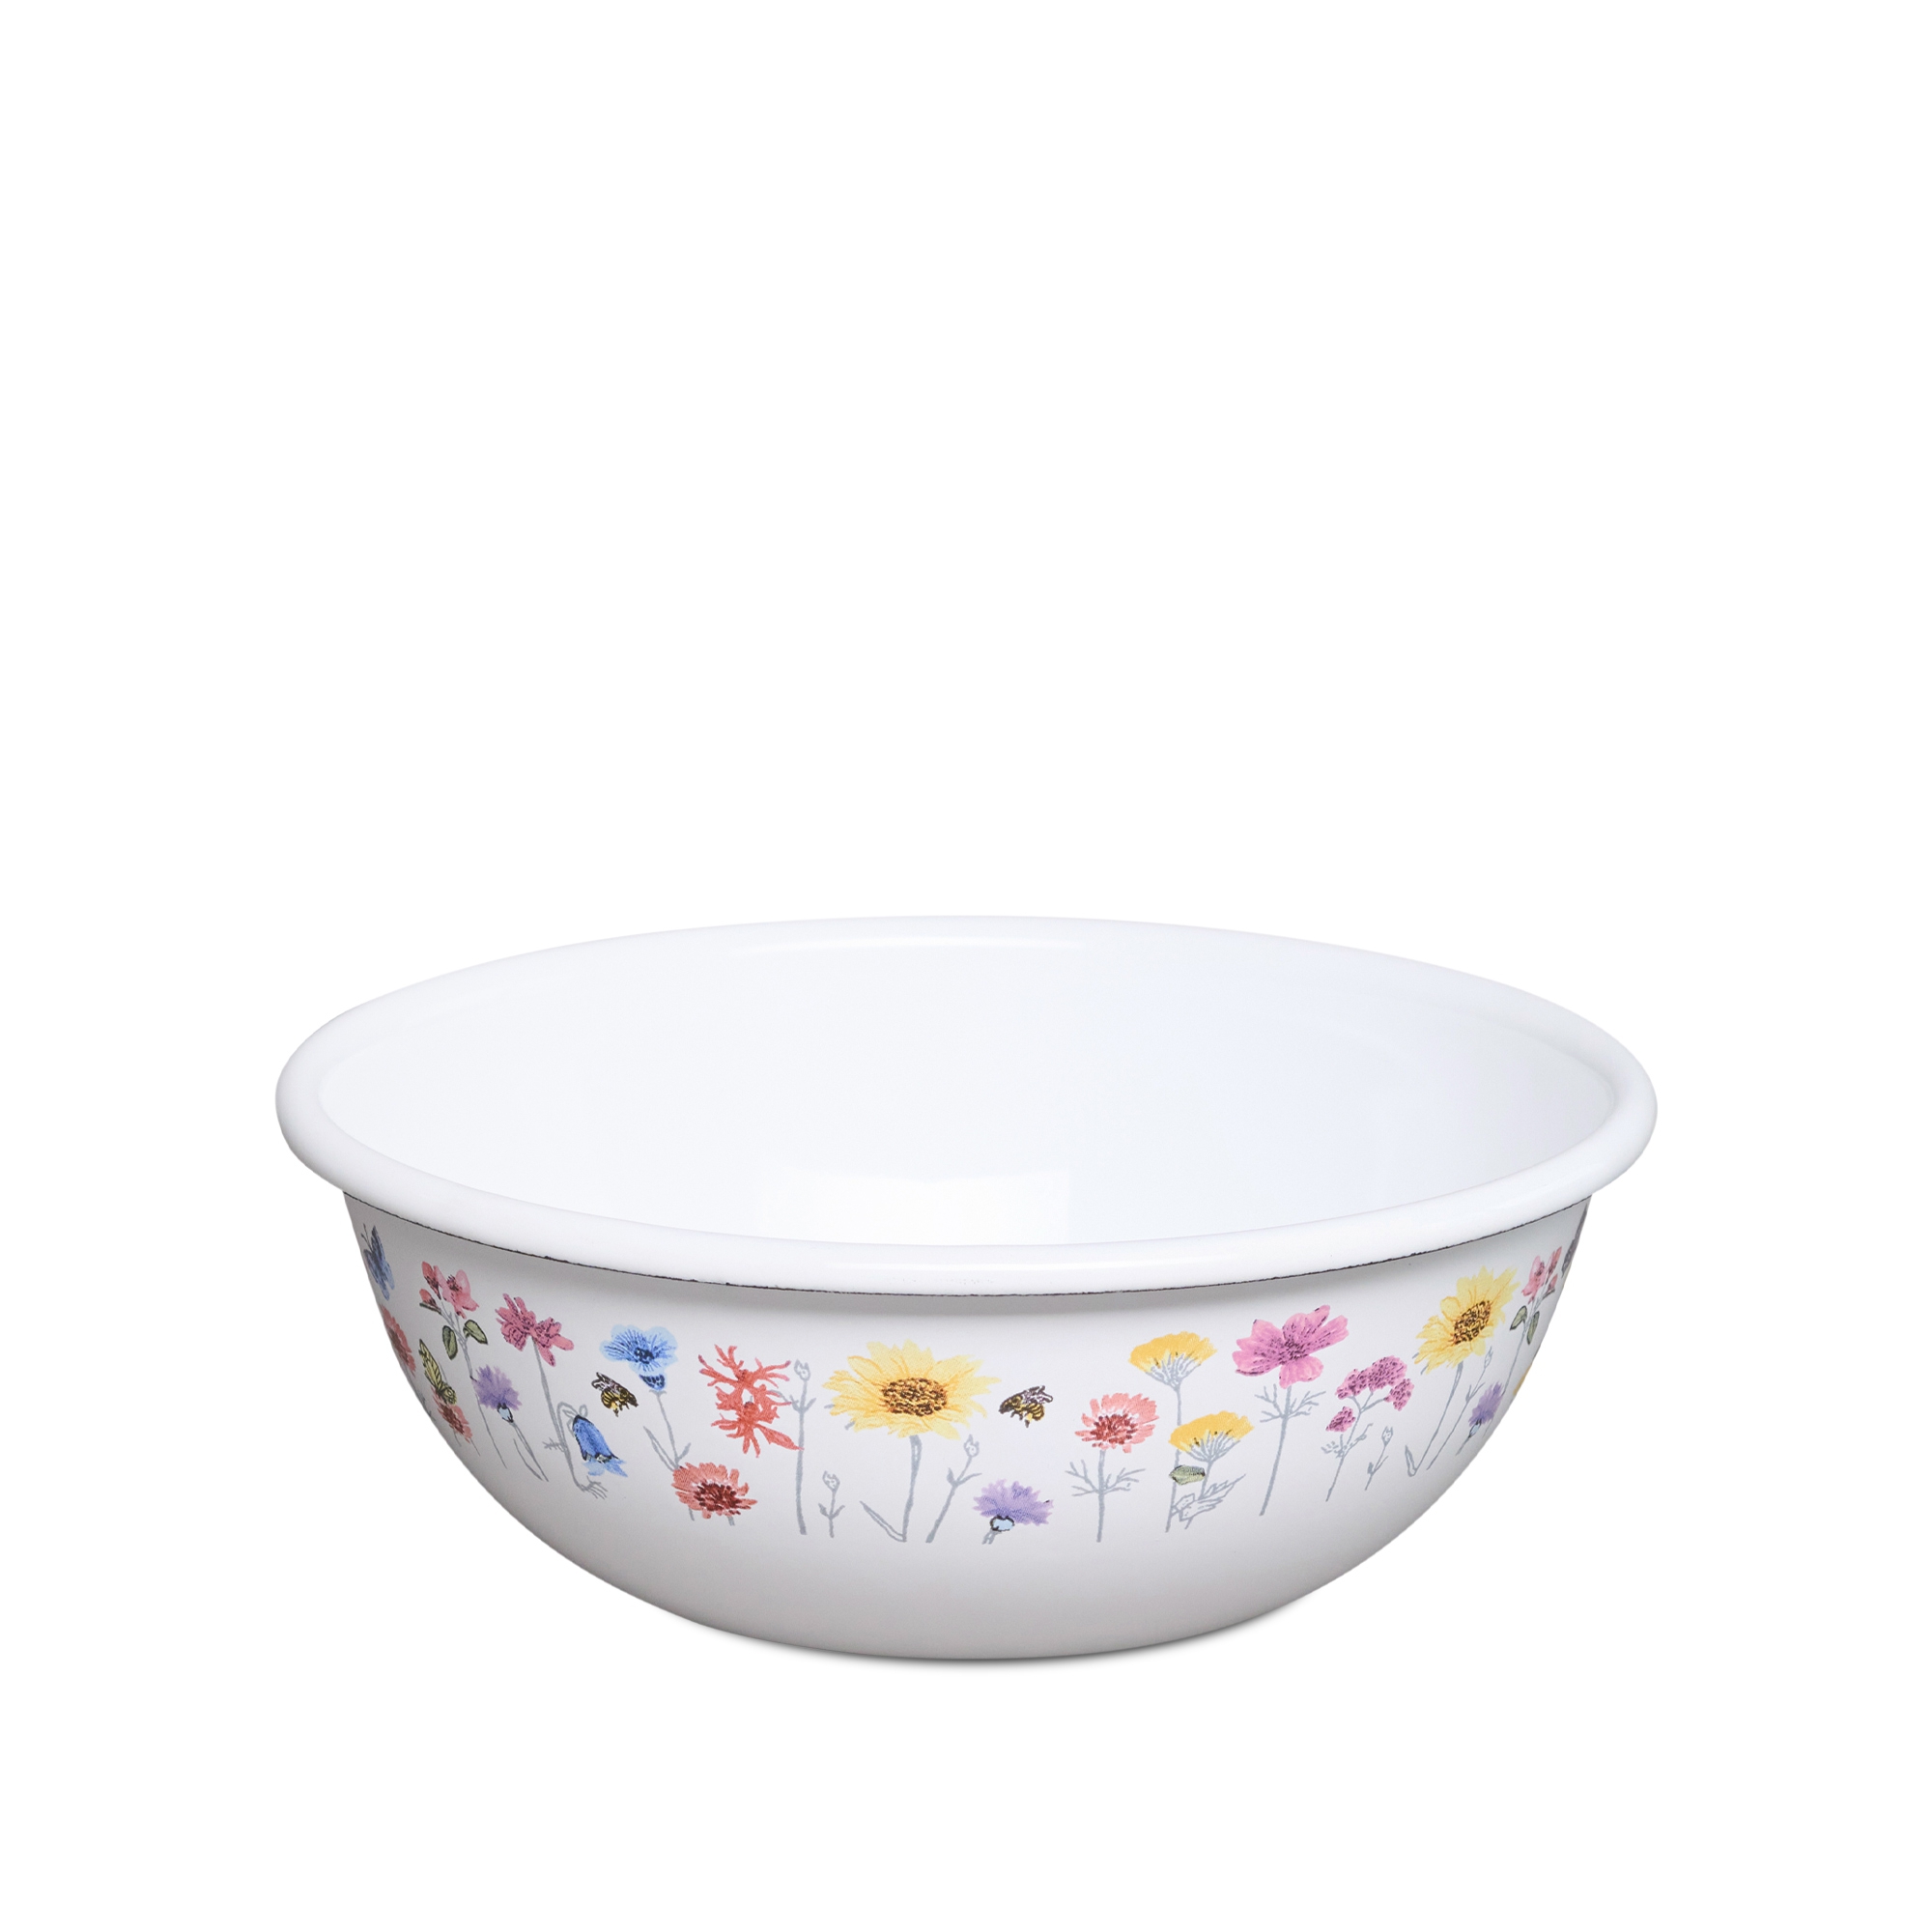 Riess special decor - FLORA - bowl 18 cm